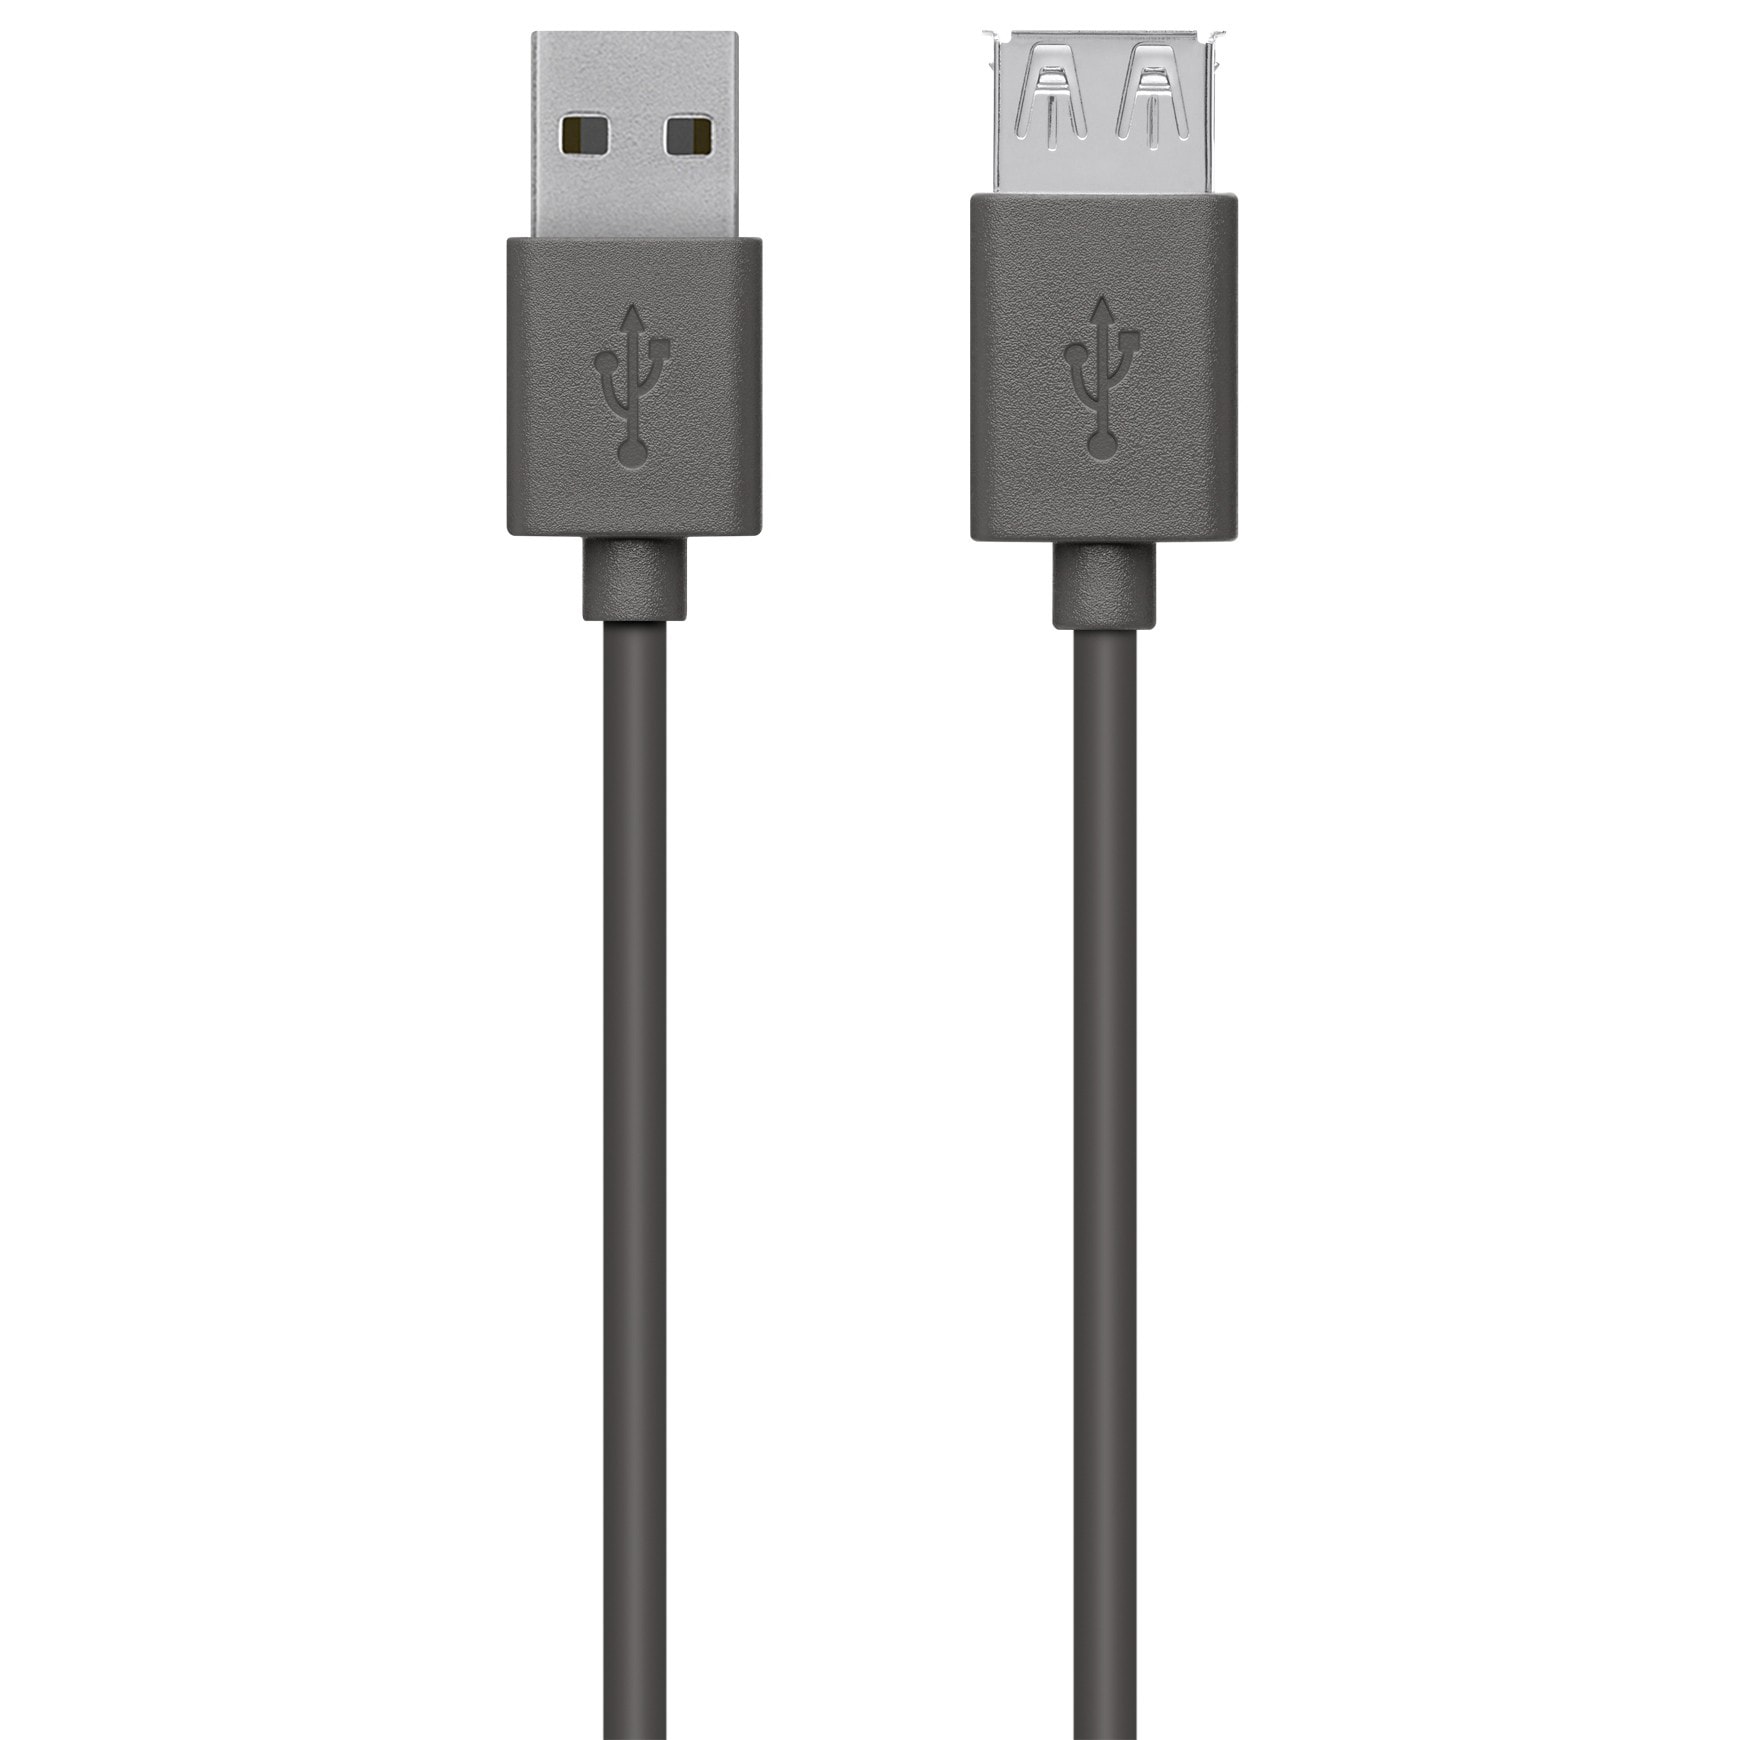 Belkin USB 2.0 forlængerkabel - 4,8 m | Elgiganten